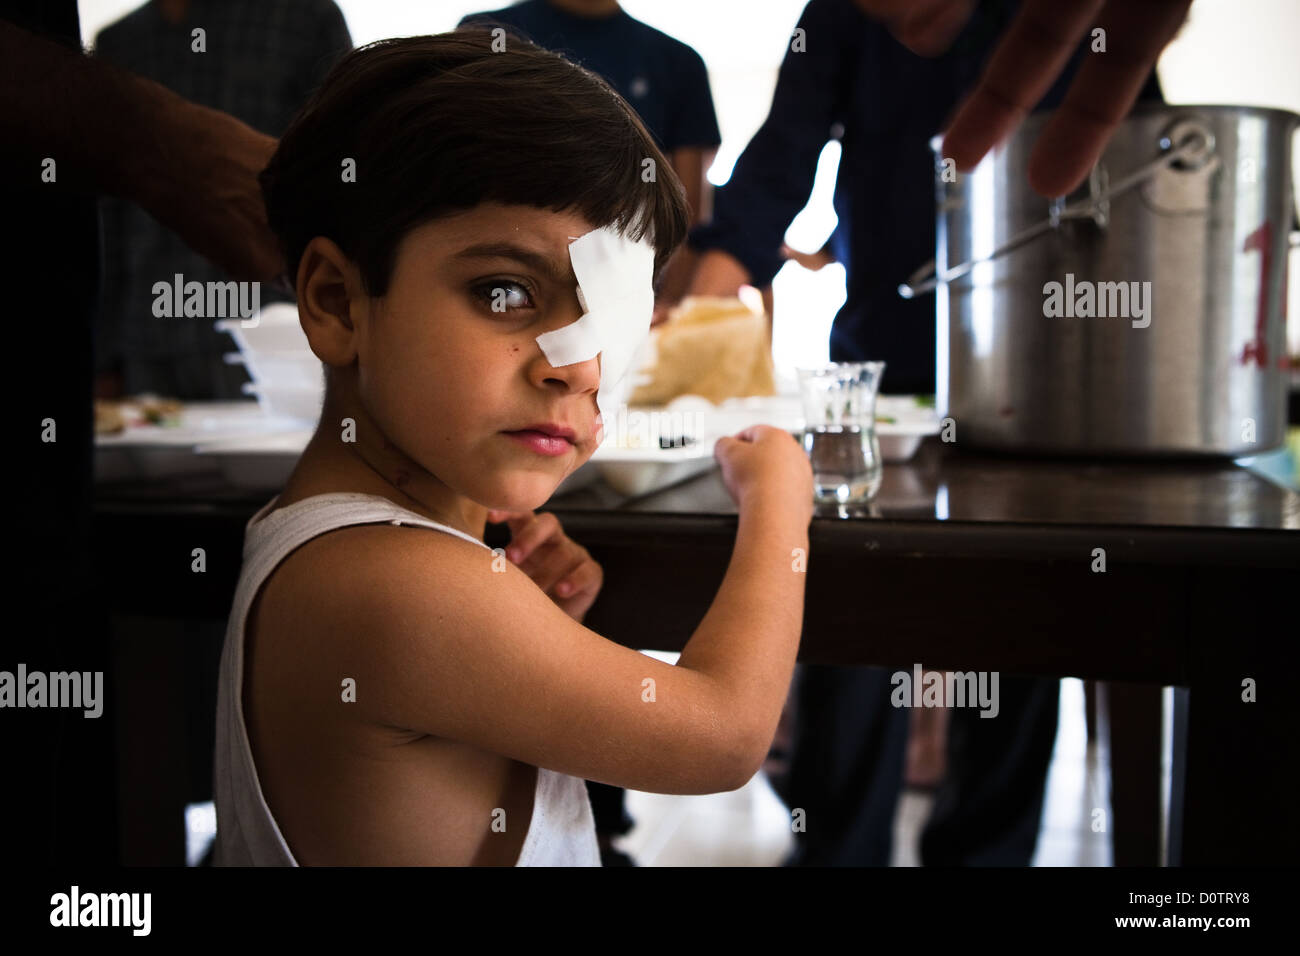 29/09/12, Reyhanli, Turquía. Huérfano de Siria con una lesión ocular en un hospital de recuperación en Turquía. Foto de stock